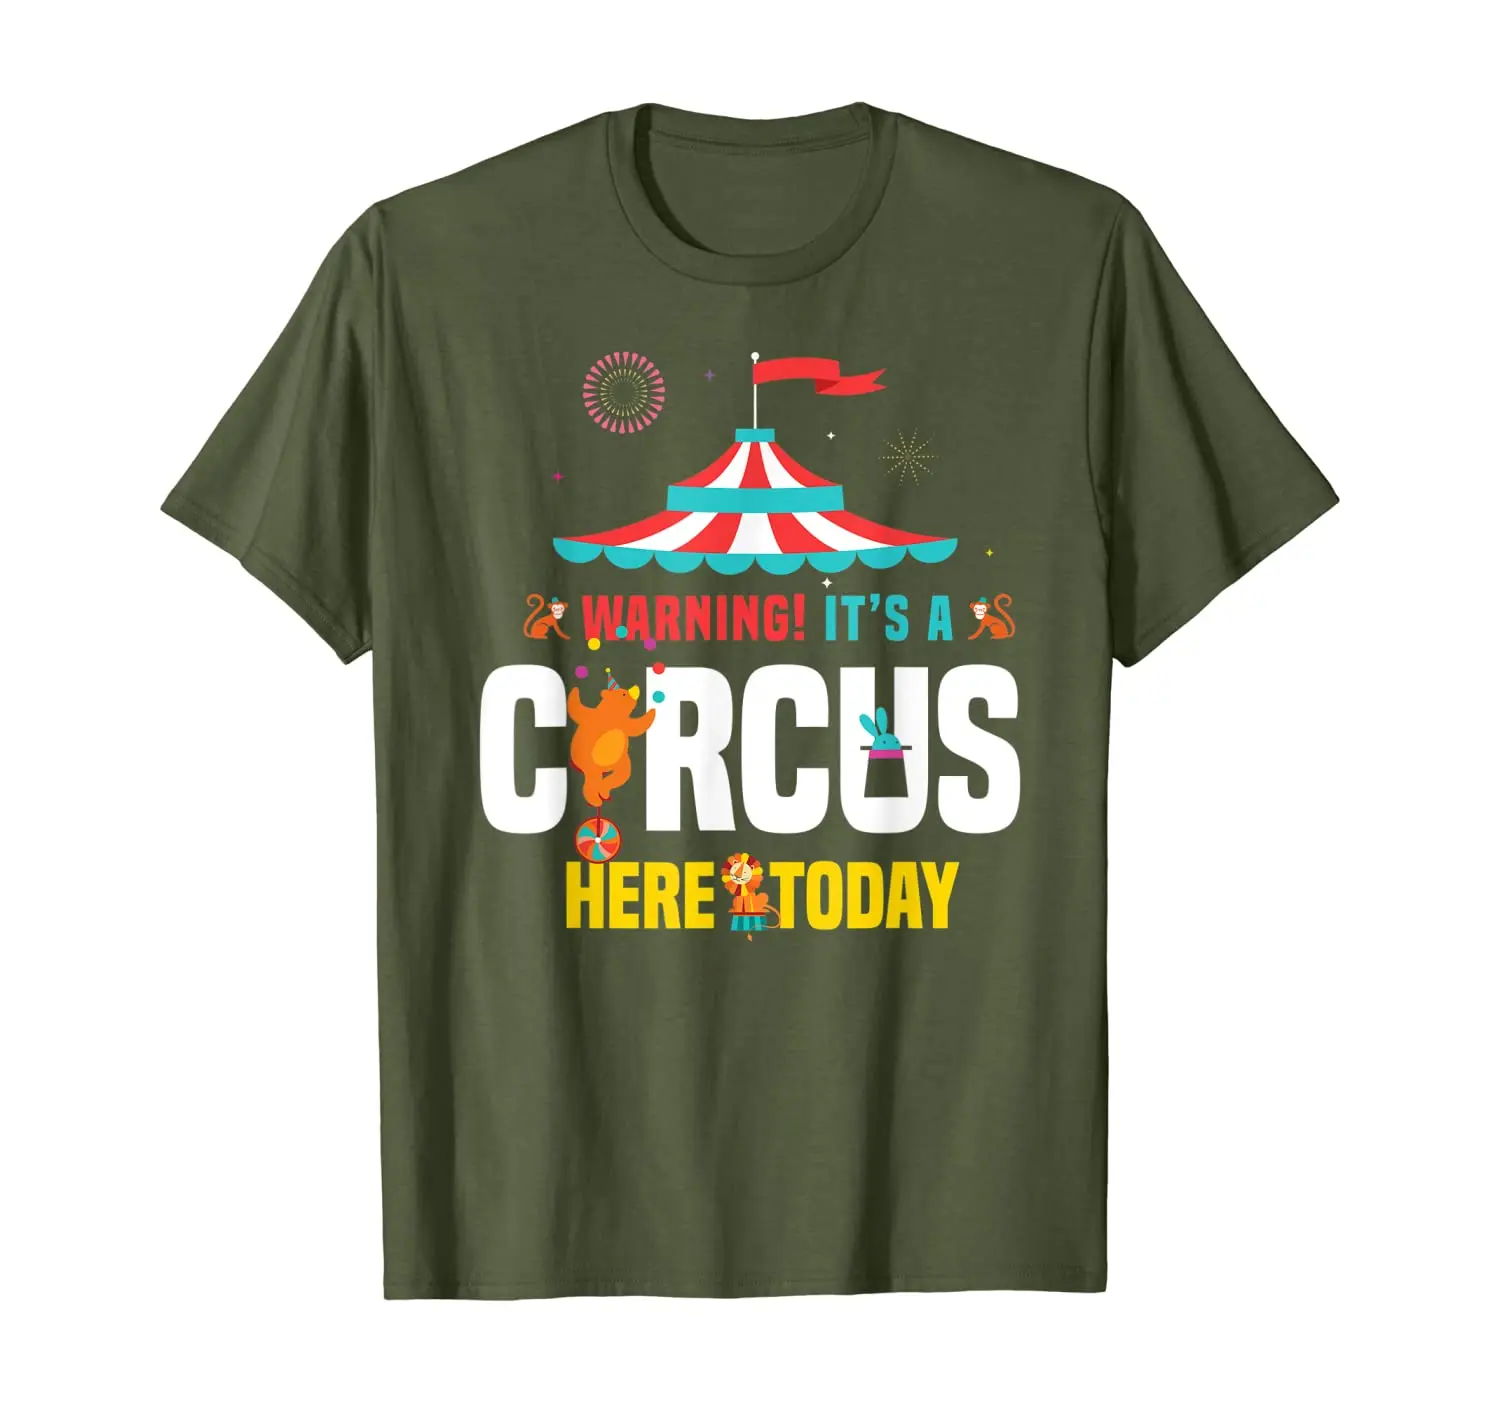 

Предупреждение, что это цирк, сегодня, карнавал, день рождения, футболка